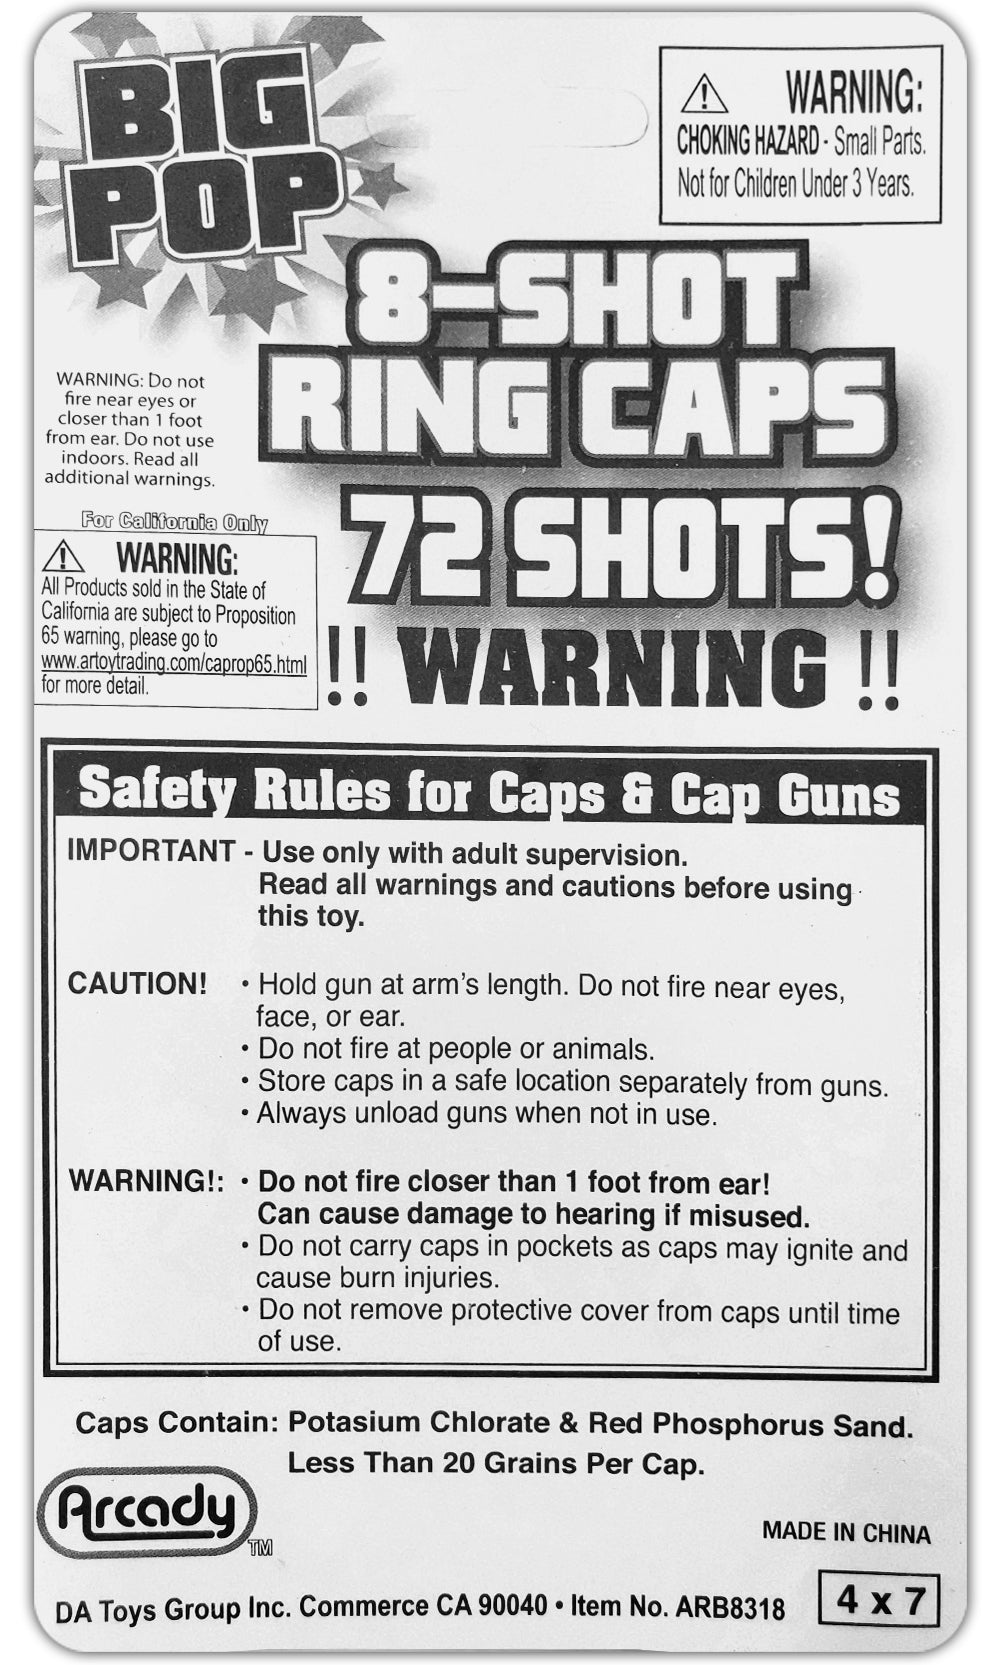 8 Shot Ring Caps : 72 Shots : 9 Red Rings : Cap Guns Refills